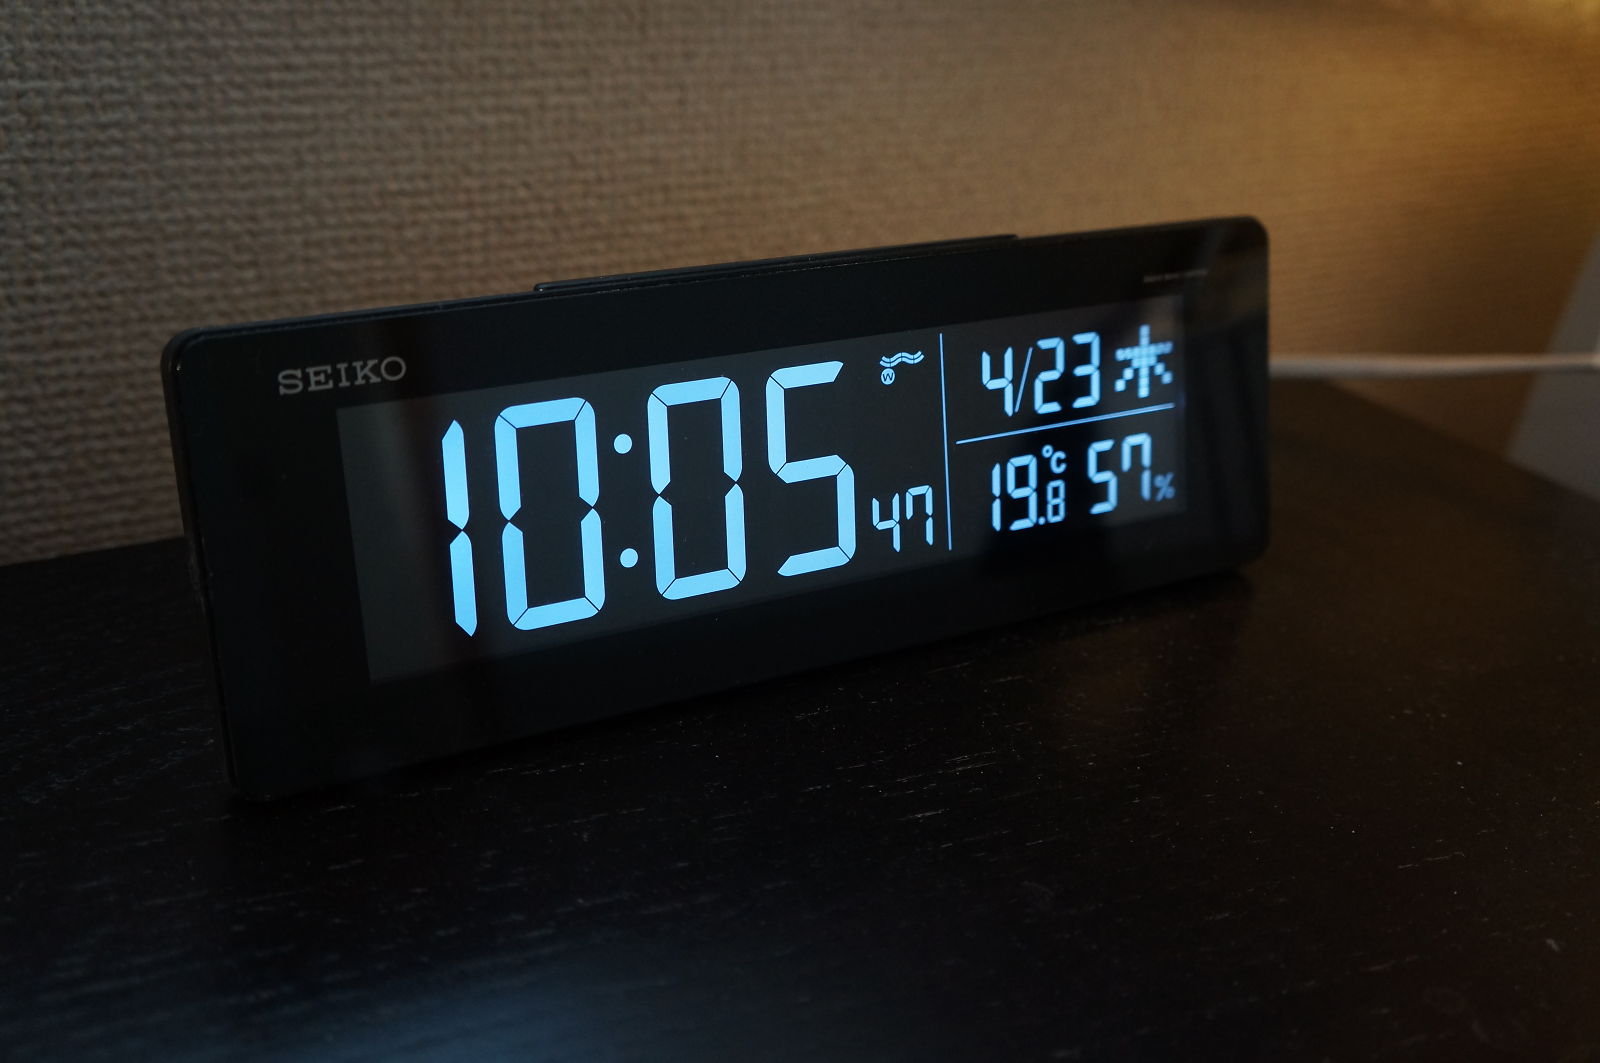 寝室の目覚まし時計をセイコーDL205Kにしました。 - 87miles.net